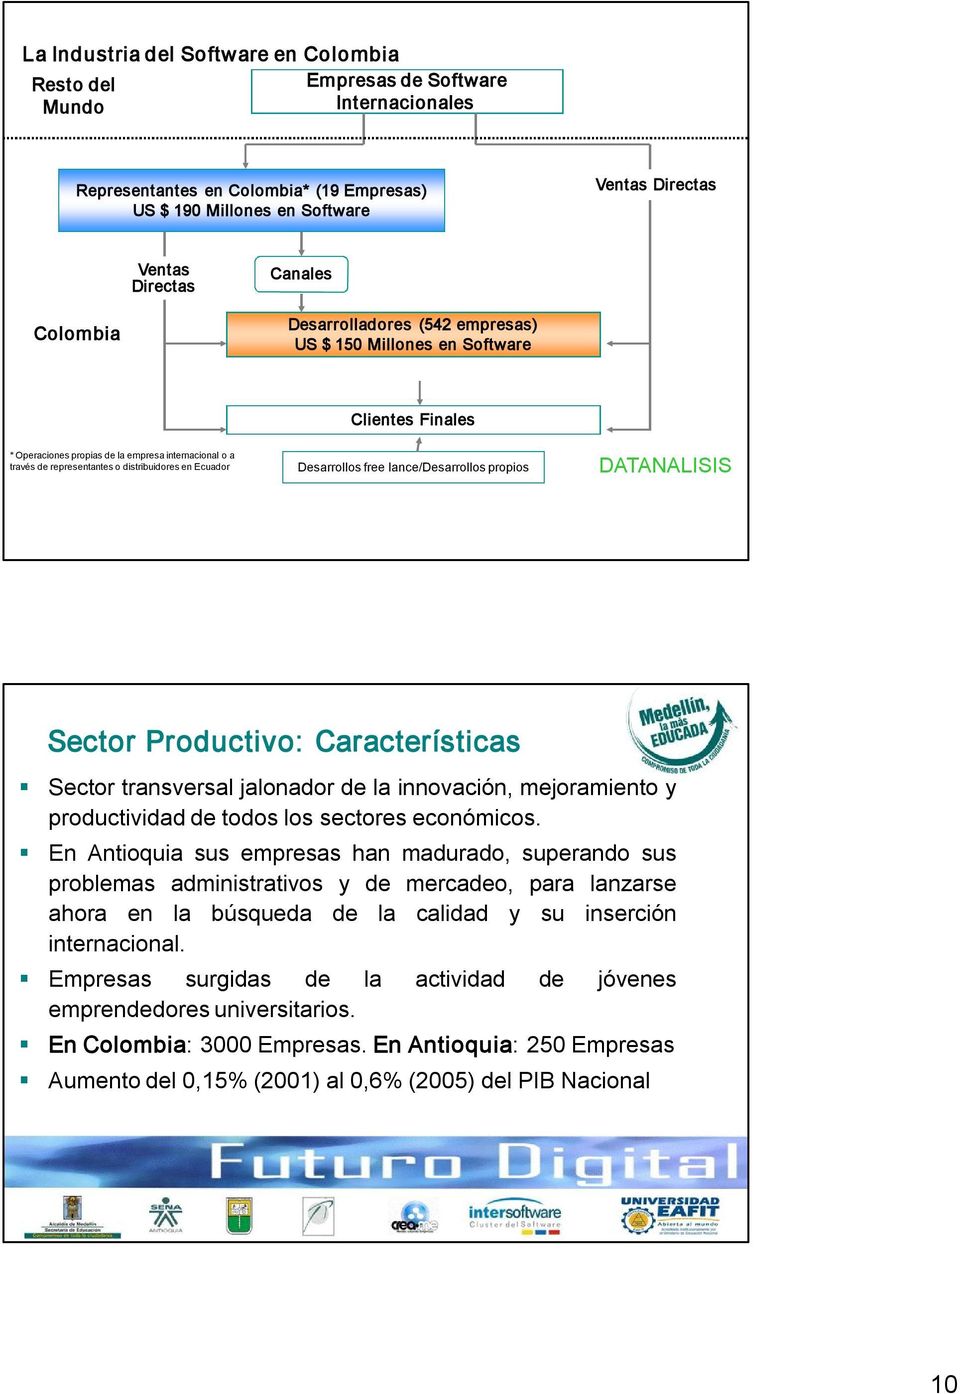 Ecuador Desarrollos free lance/desarrollos propios DATANALISIS Sector Productivo: Características Sector transversal jalonador de la innovación, mejoramiento y productividad de todos los sectores